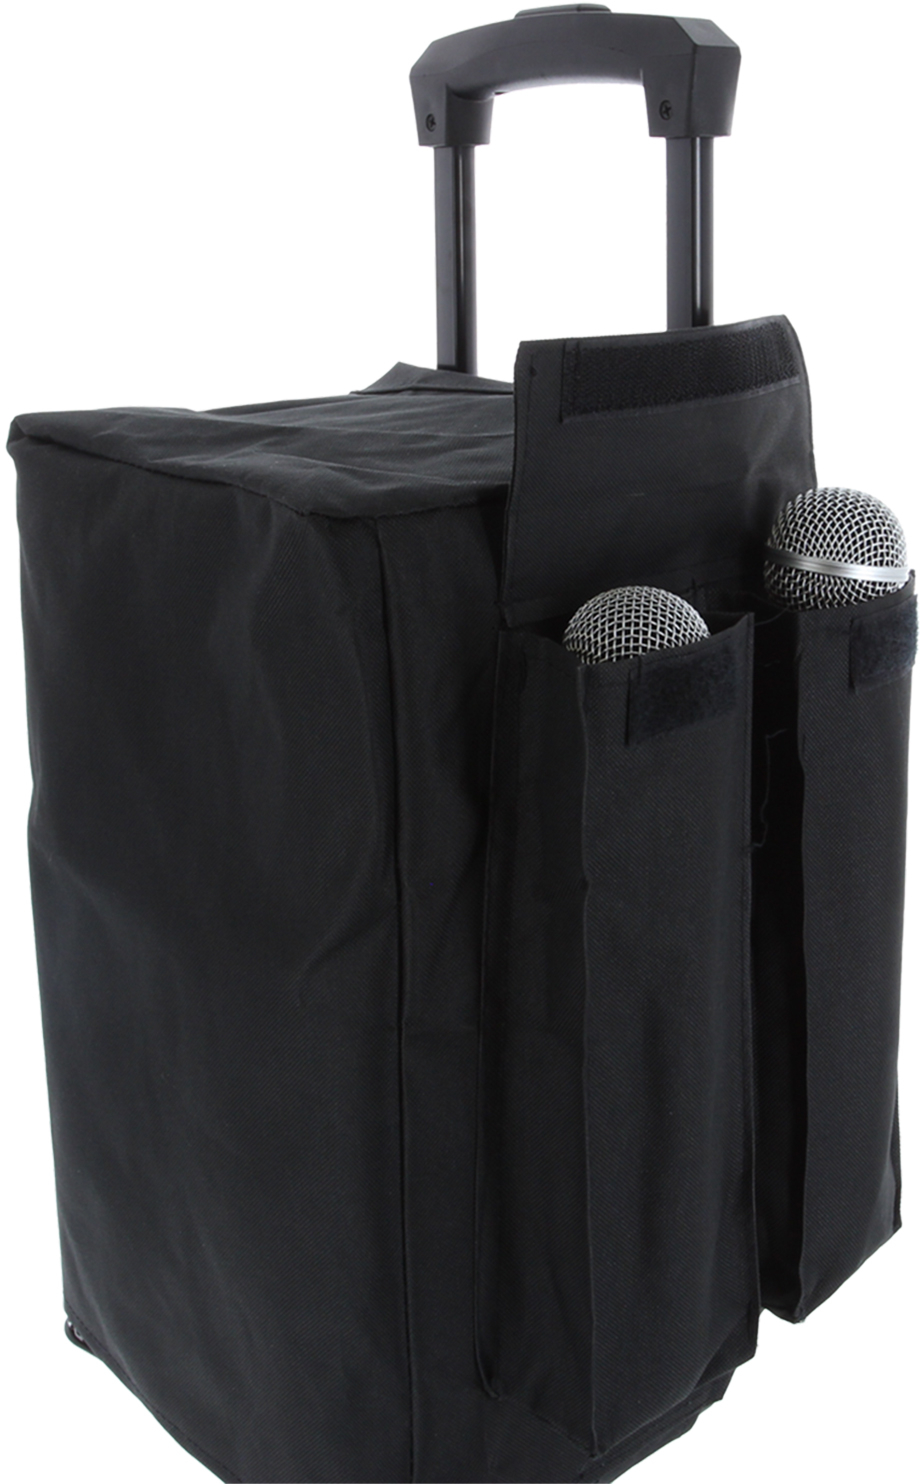 Power Acoustics Bag Taky 10 - Tasche für Lautsprecher & Subwoofer - Variation 2